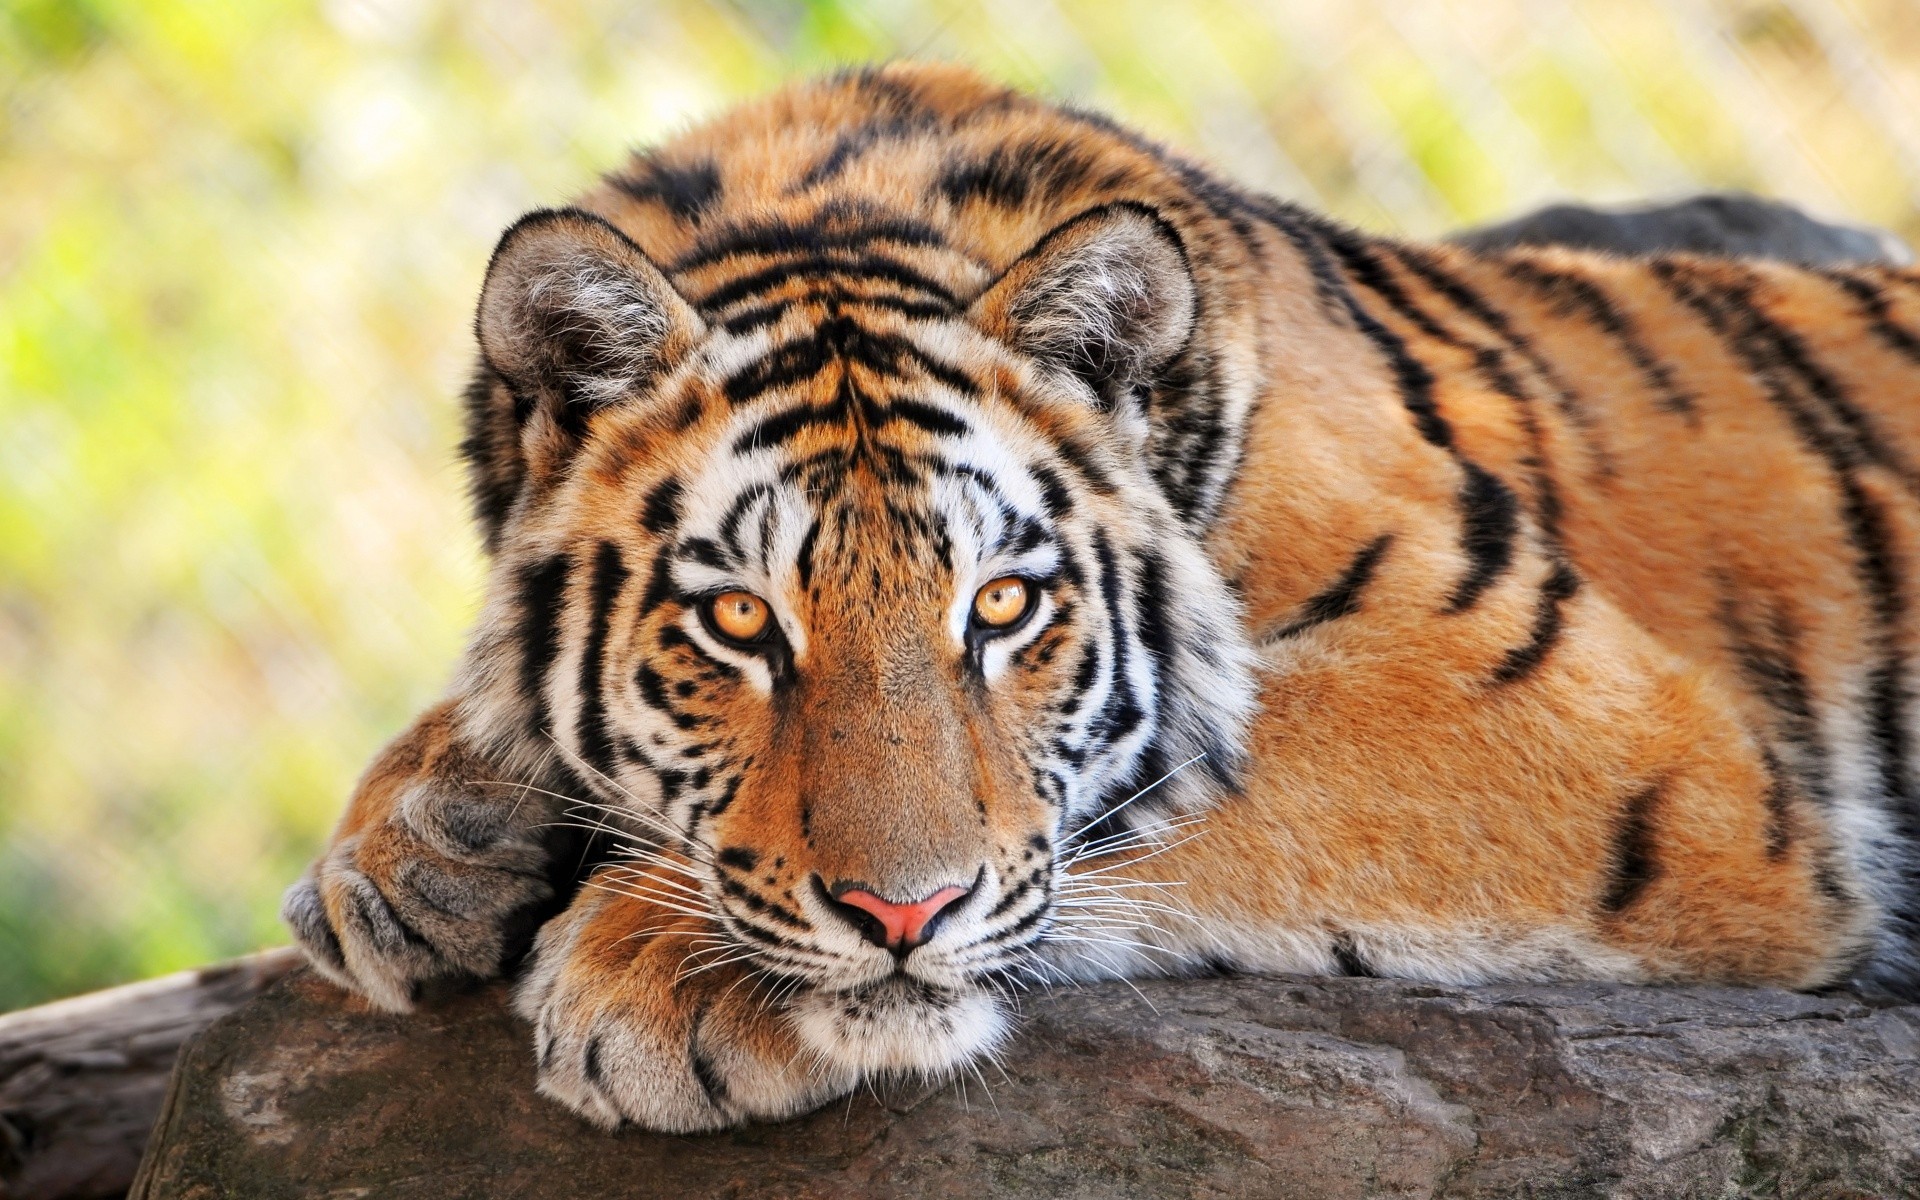 животные дикой природы кошка тигр хищник млекопитающее животное дикий сафари зоопарк джунгли охотник мясоед природа глава охота мех большой полоса агрессии опасность